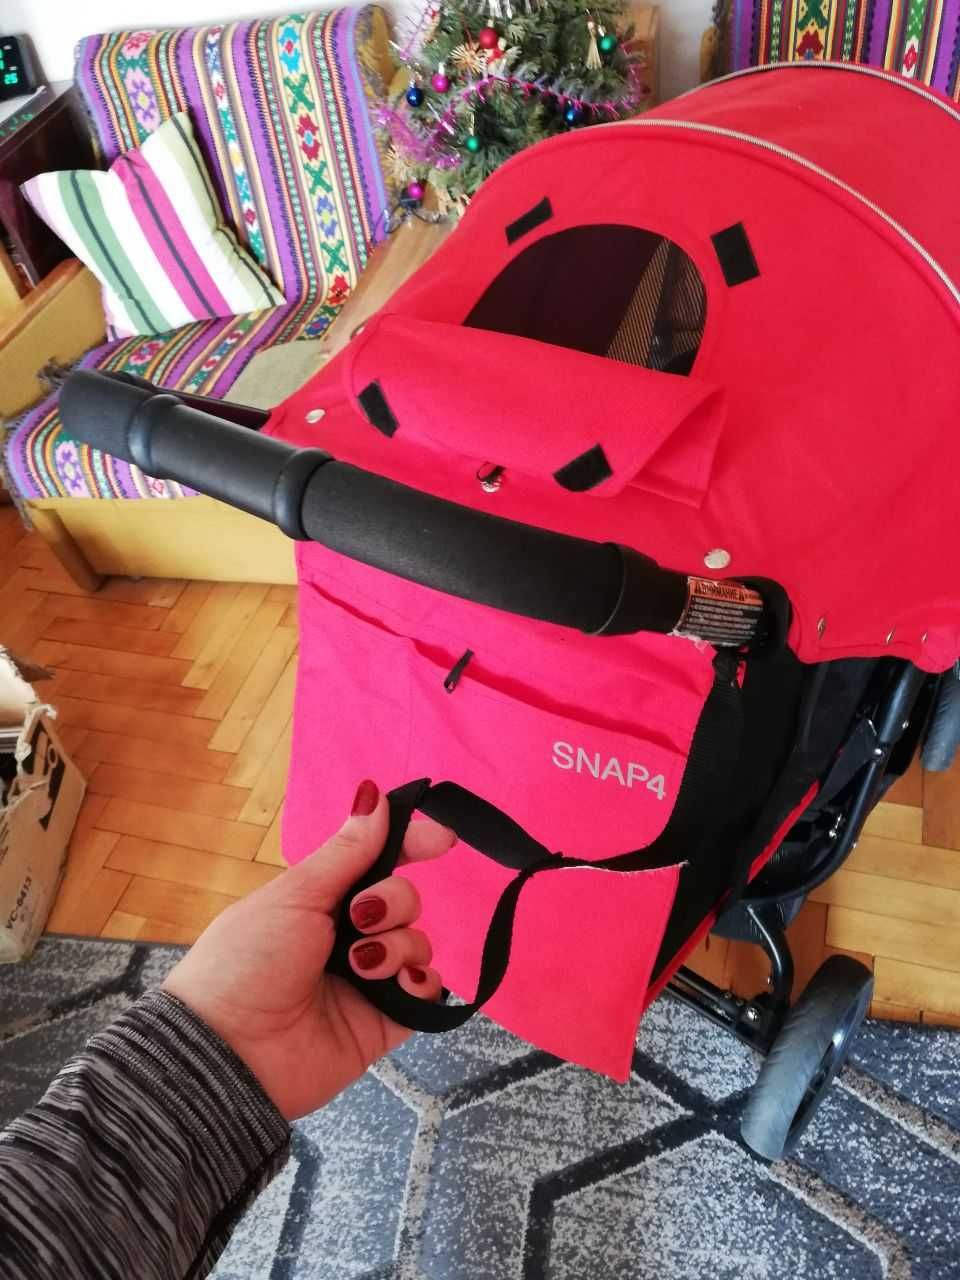 Прогулянковий візок (коляска) Valco baby Snap 4, колір Fire red